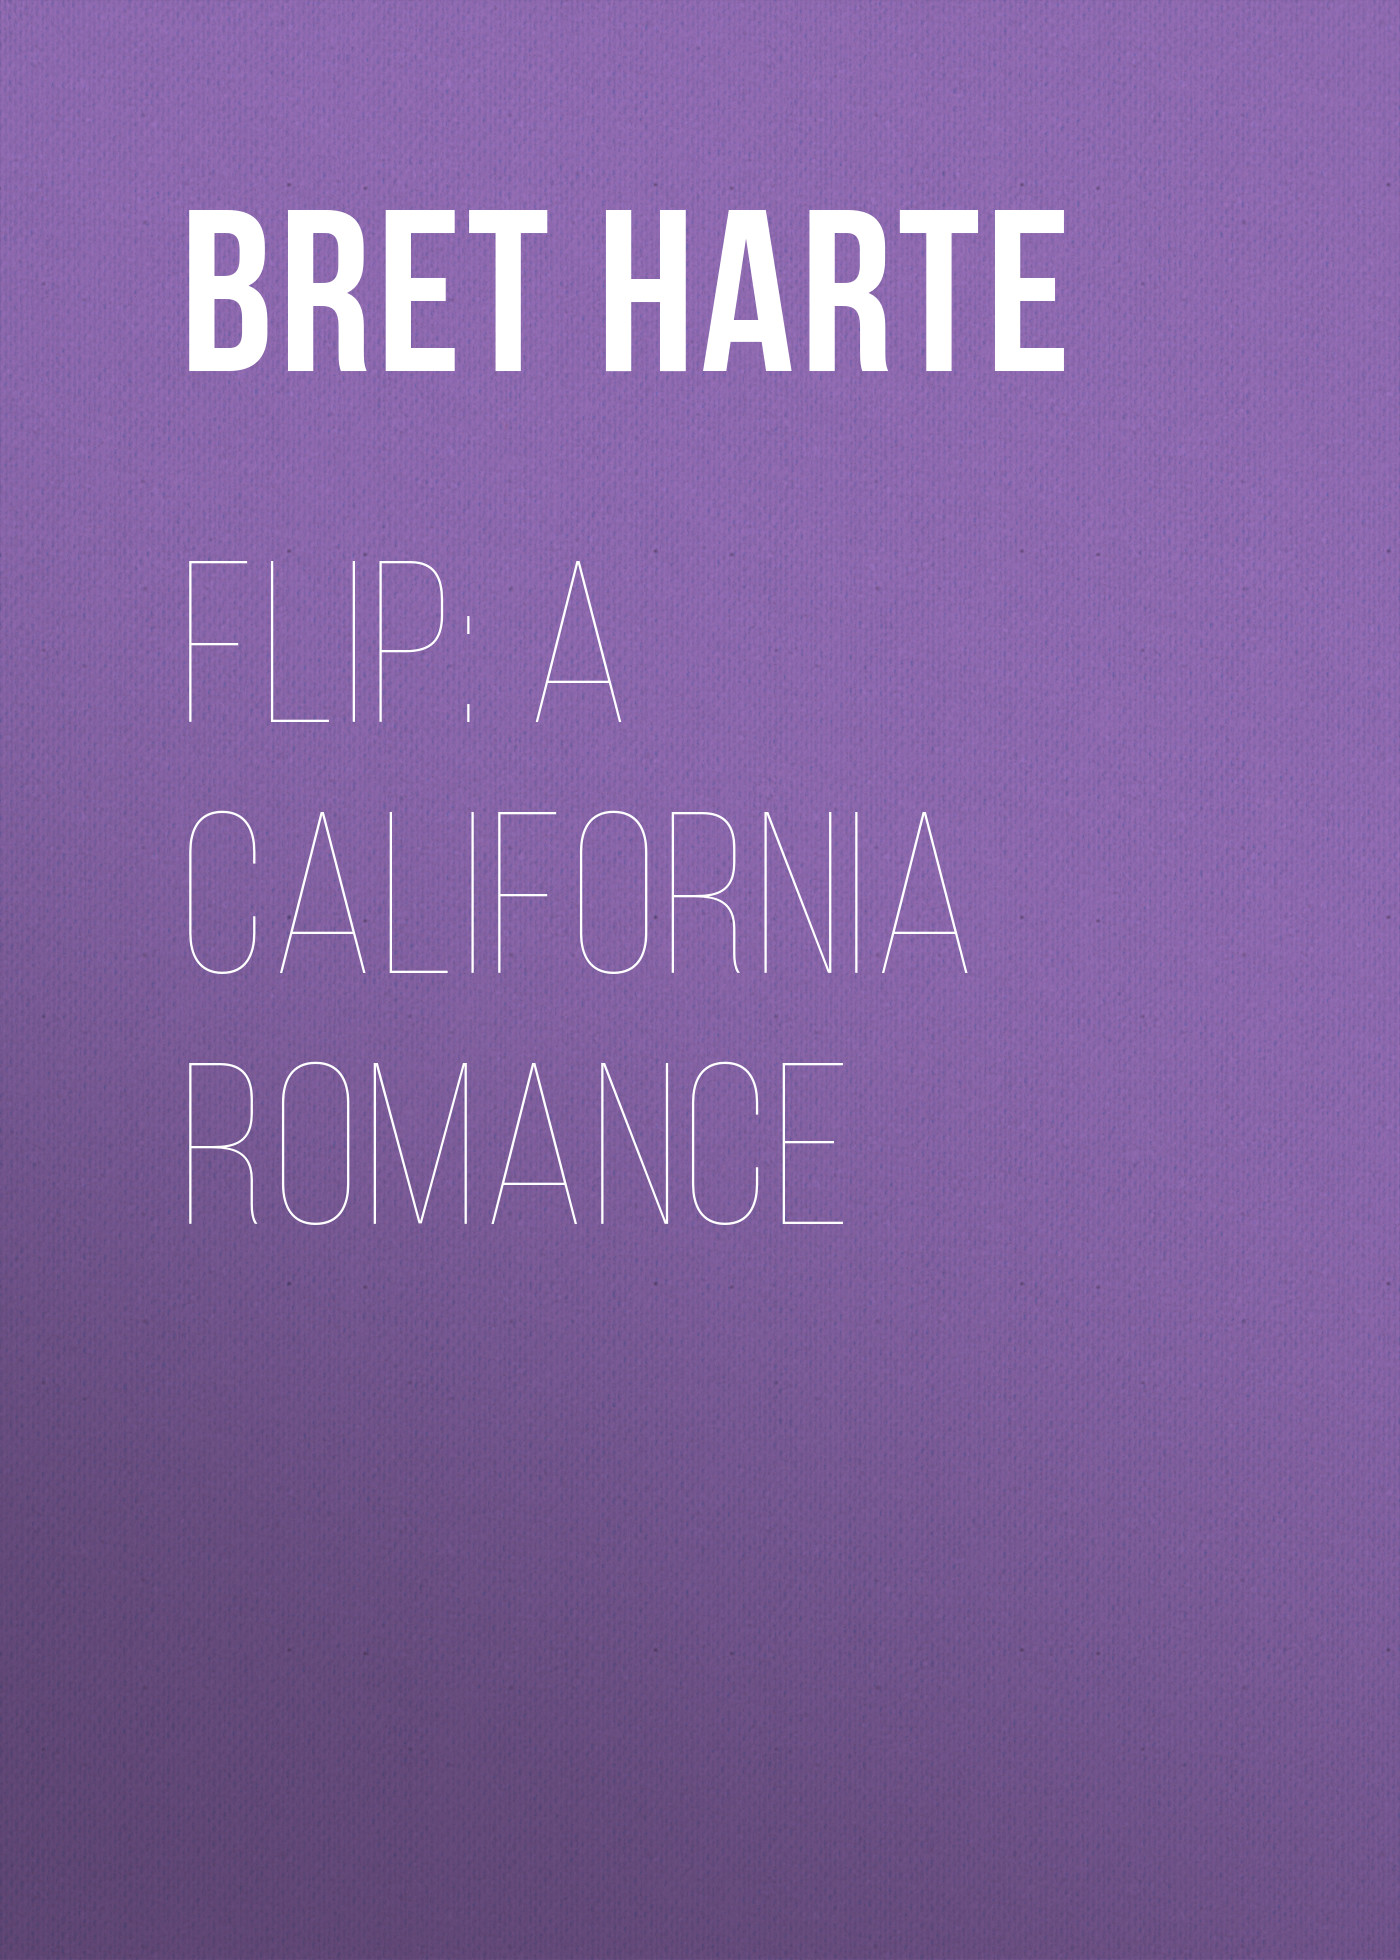 Книга Flip: A California Romance из серии , созданная Bret Harte, может относится к жанру Зарубежная фантастика, Литература 19 века, Зарубежная старинная литература, Зарубежная классика. Стоимость электронной книги Flip: A California Romance с идентификатором 36322948 составляет 0 руб.